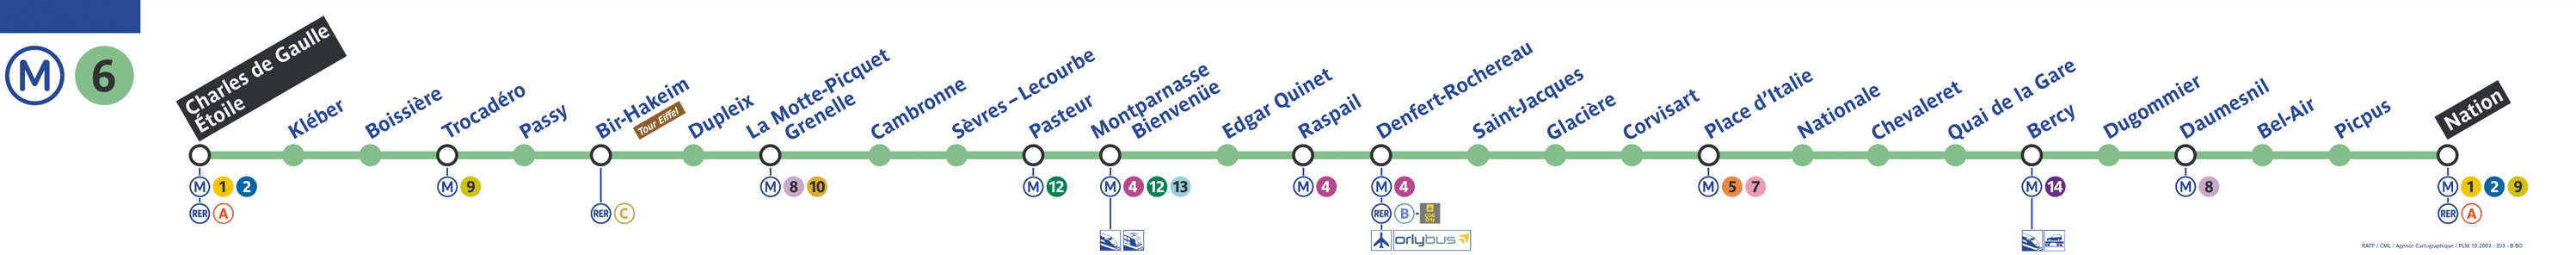 Plan ligne 6 métro de Paris